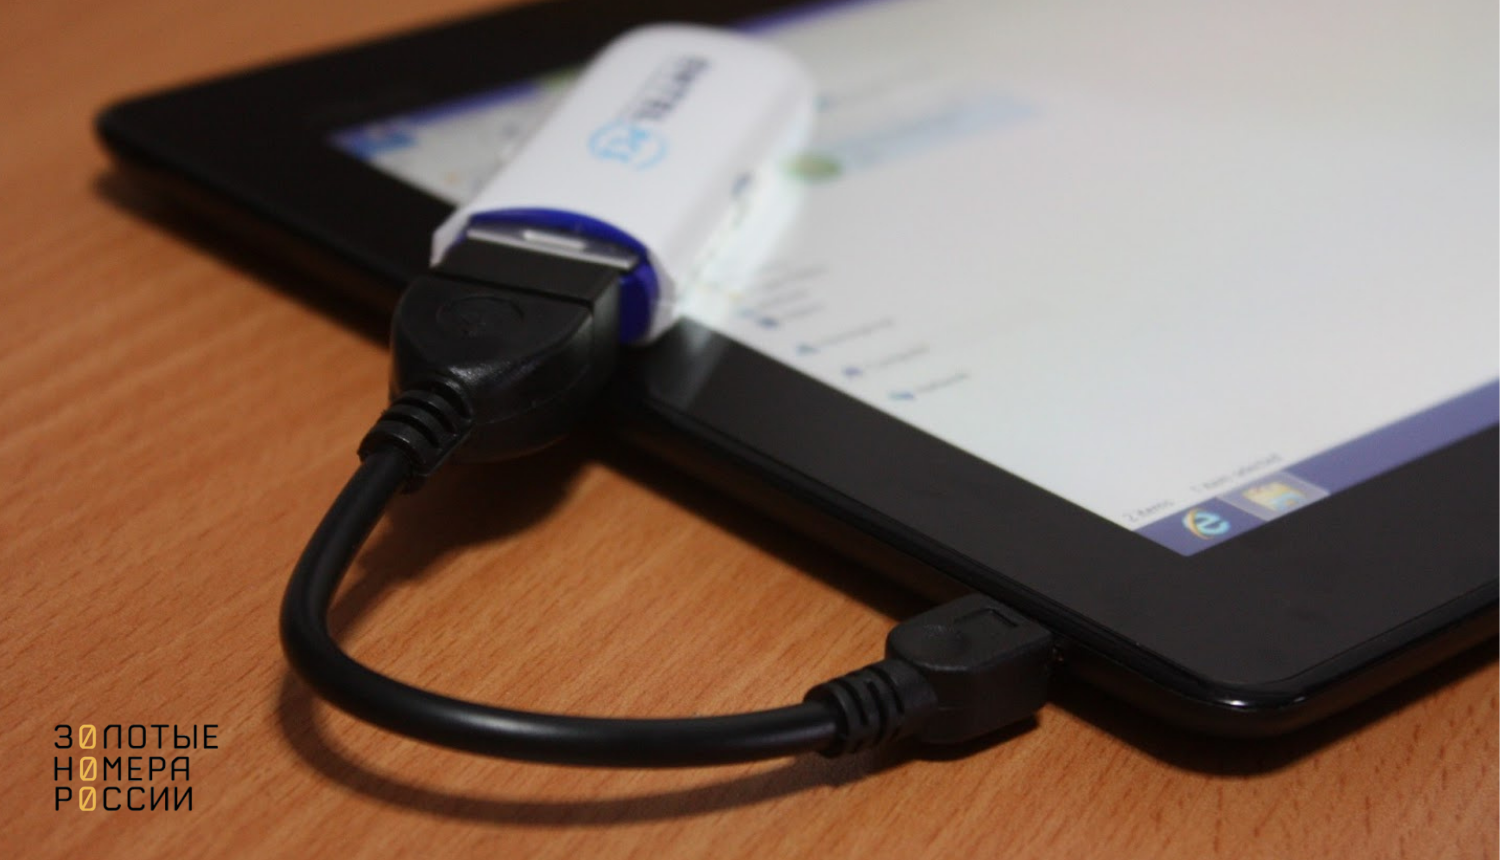 Несколько способов подключить USB флешку или другой накопитель к смартфону или планшету Android Что нужно для подключения и как работать с флешкой